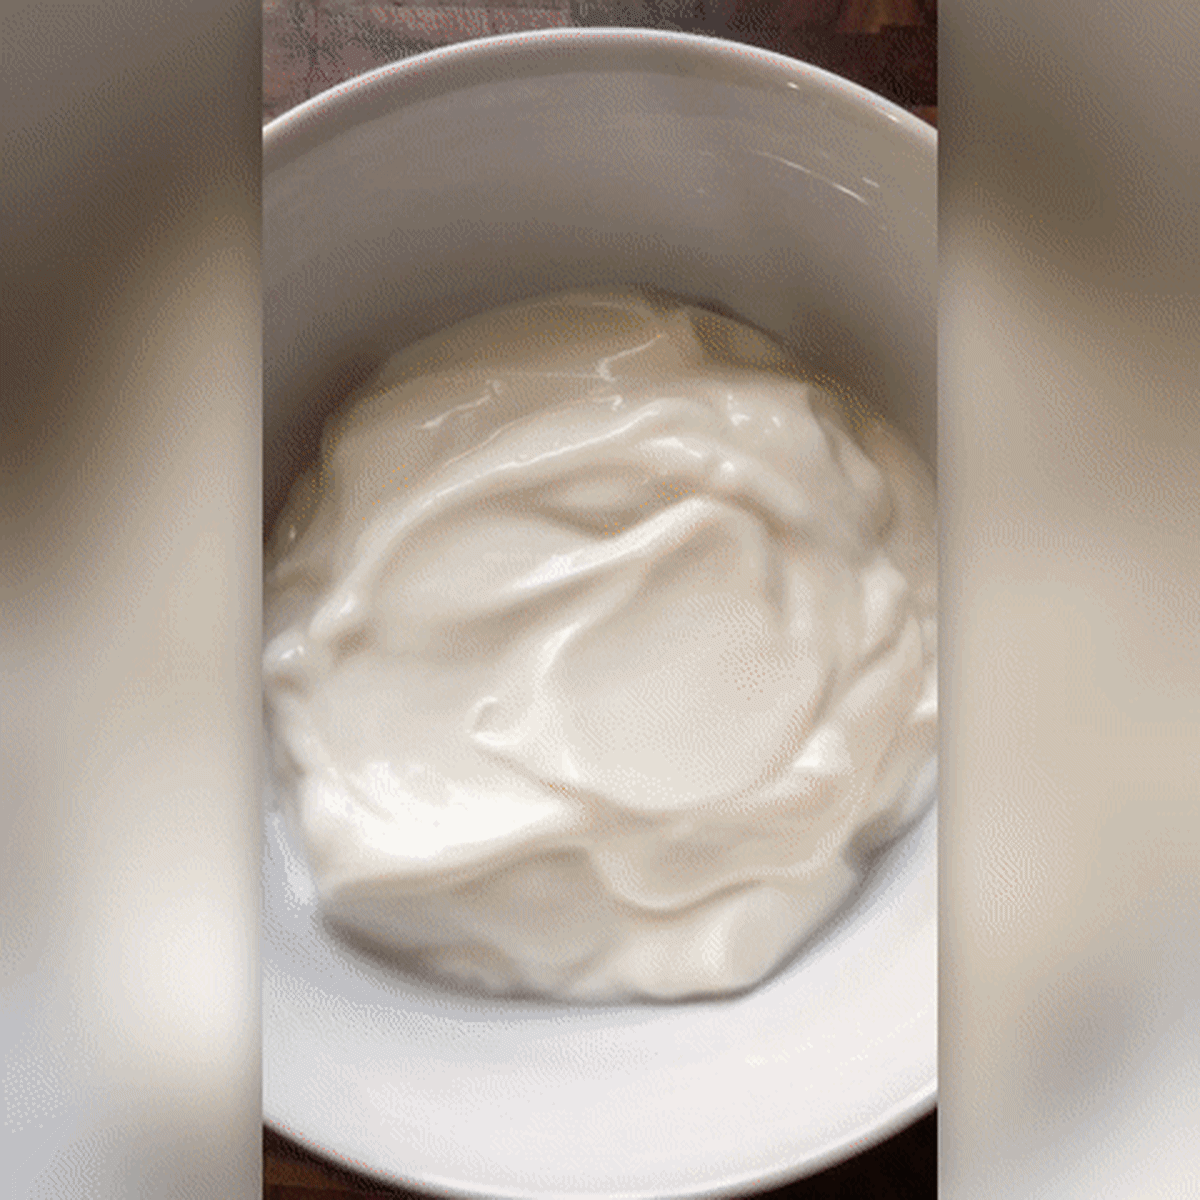 2019-06-24-what-i-eat-yogurt-bowl